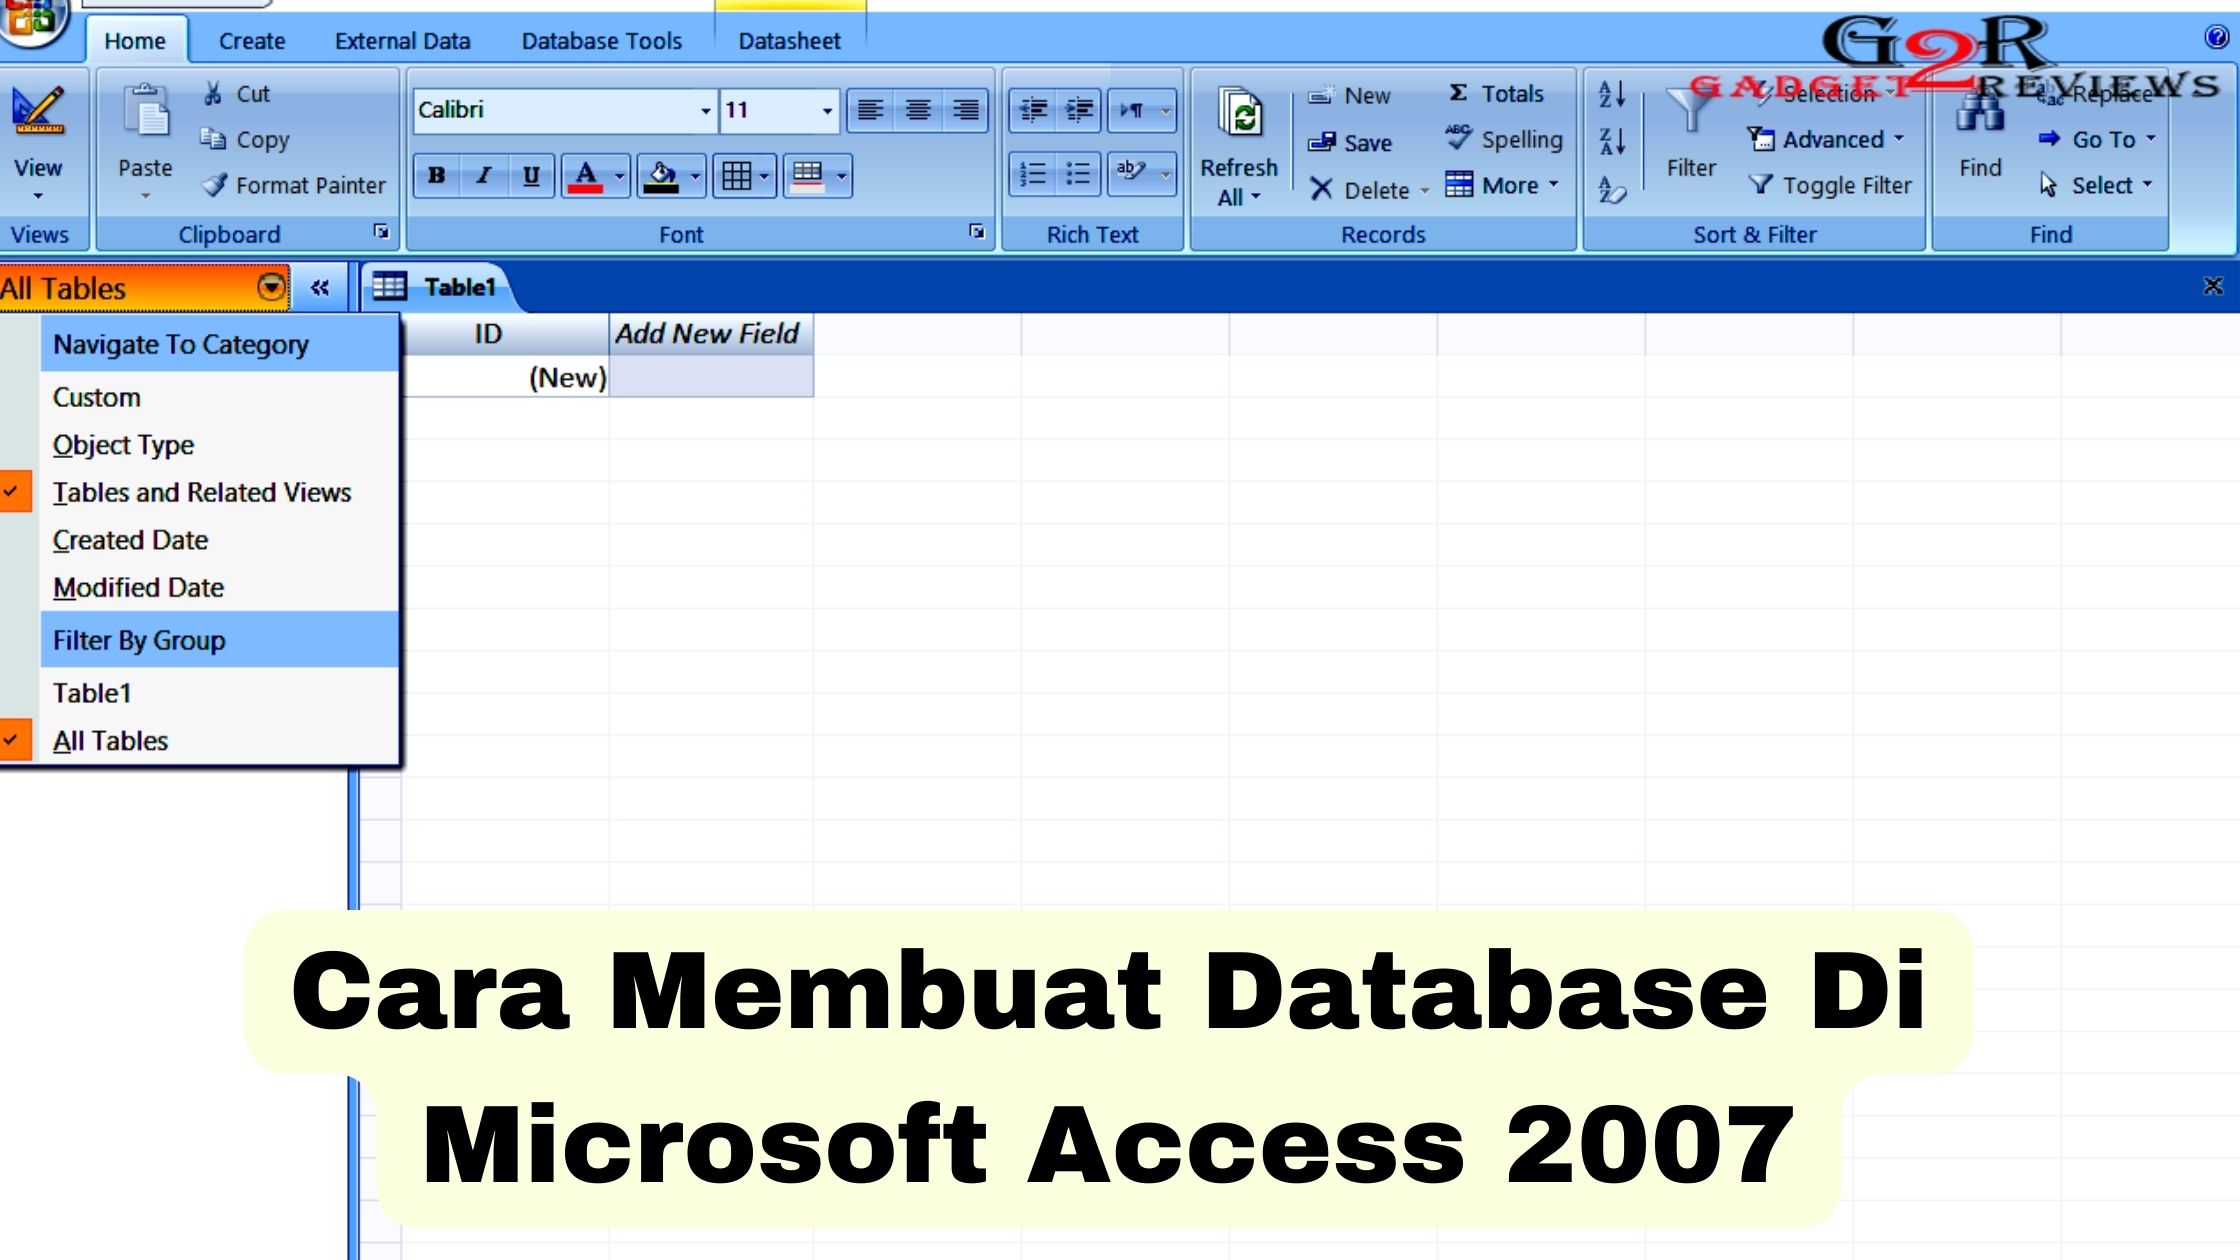 Cara Membuat Database Di Microsoft Access 2007